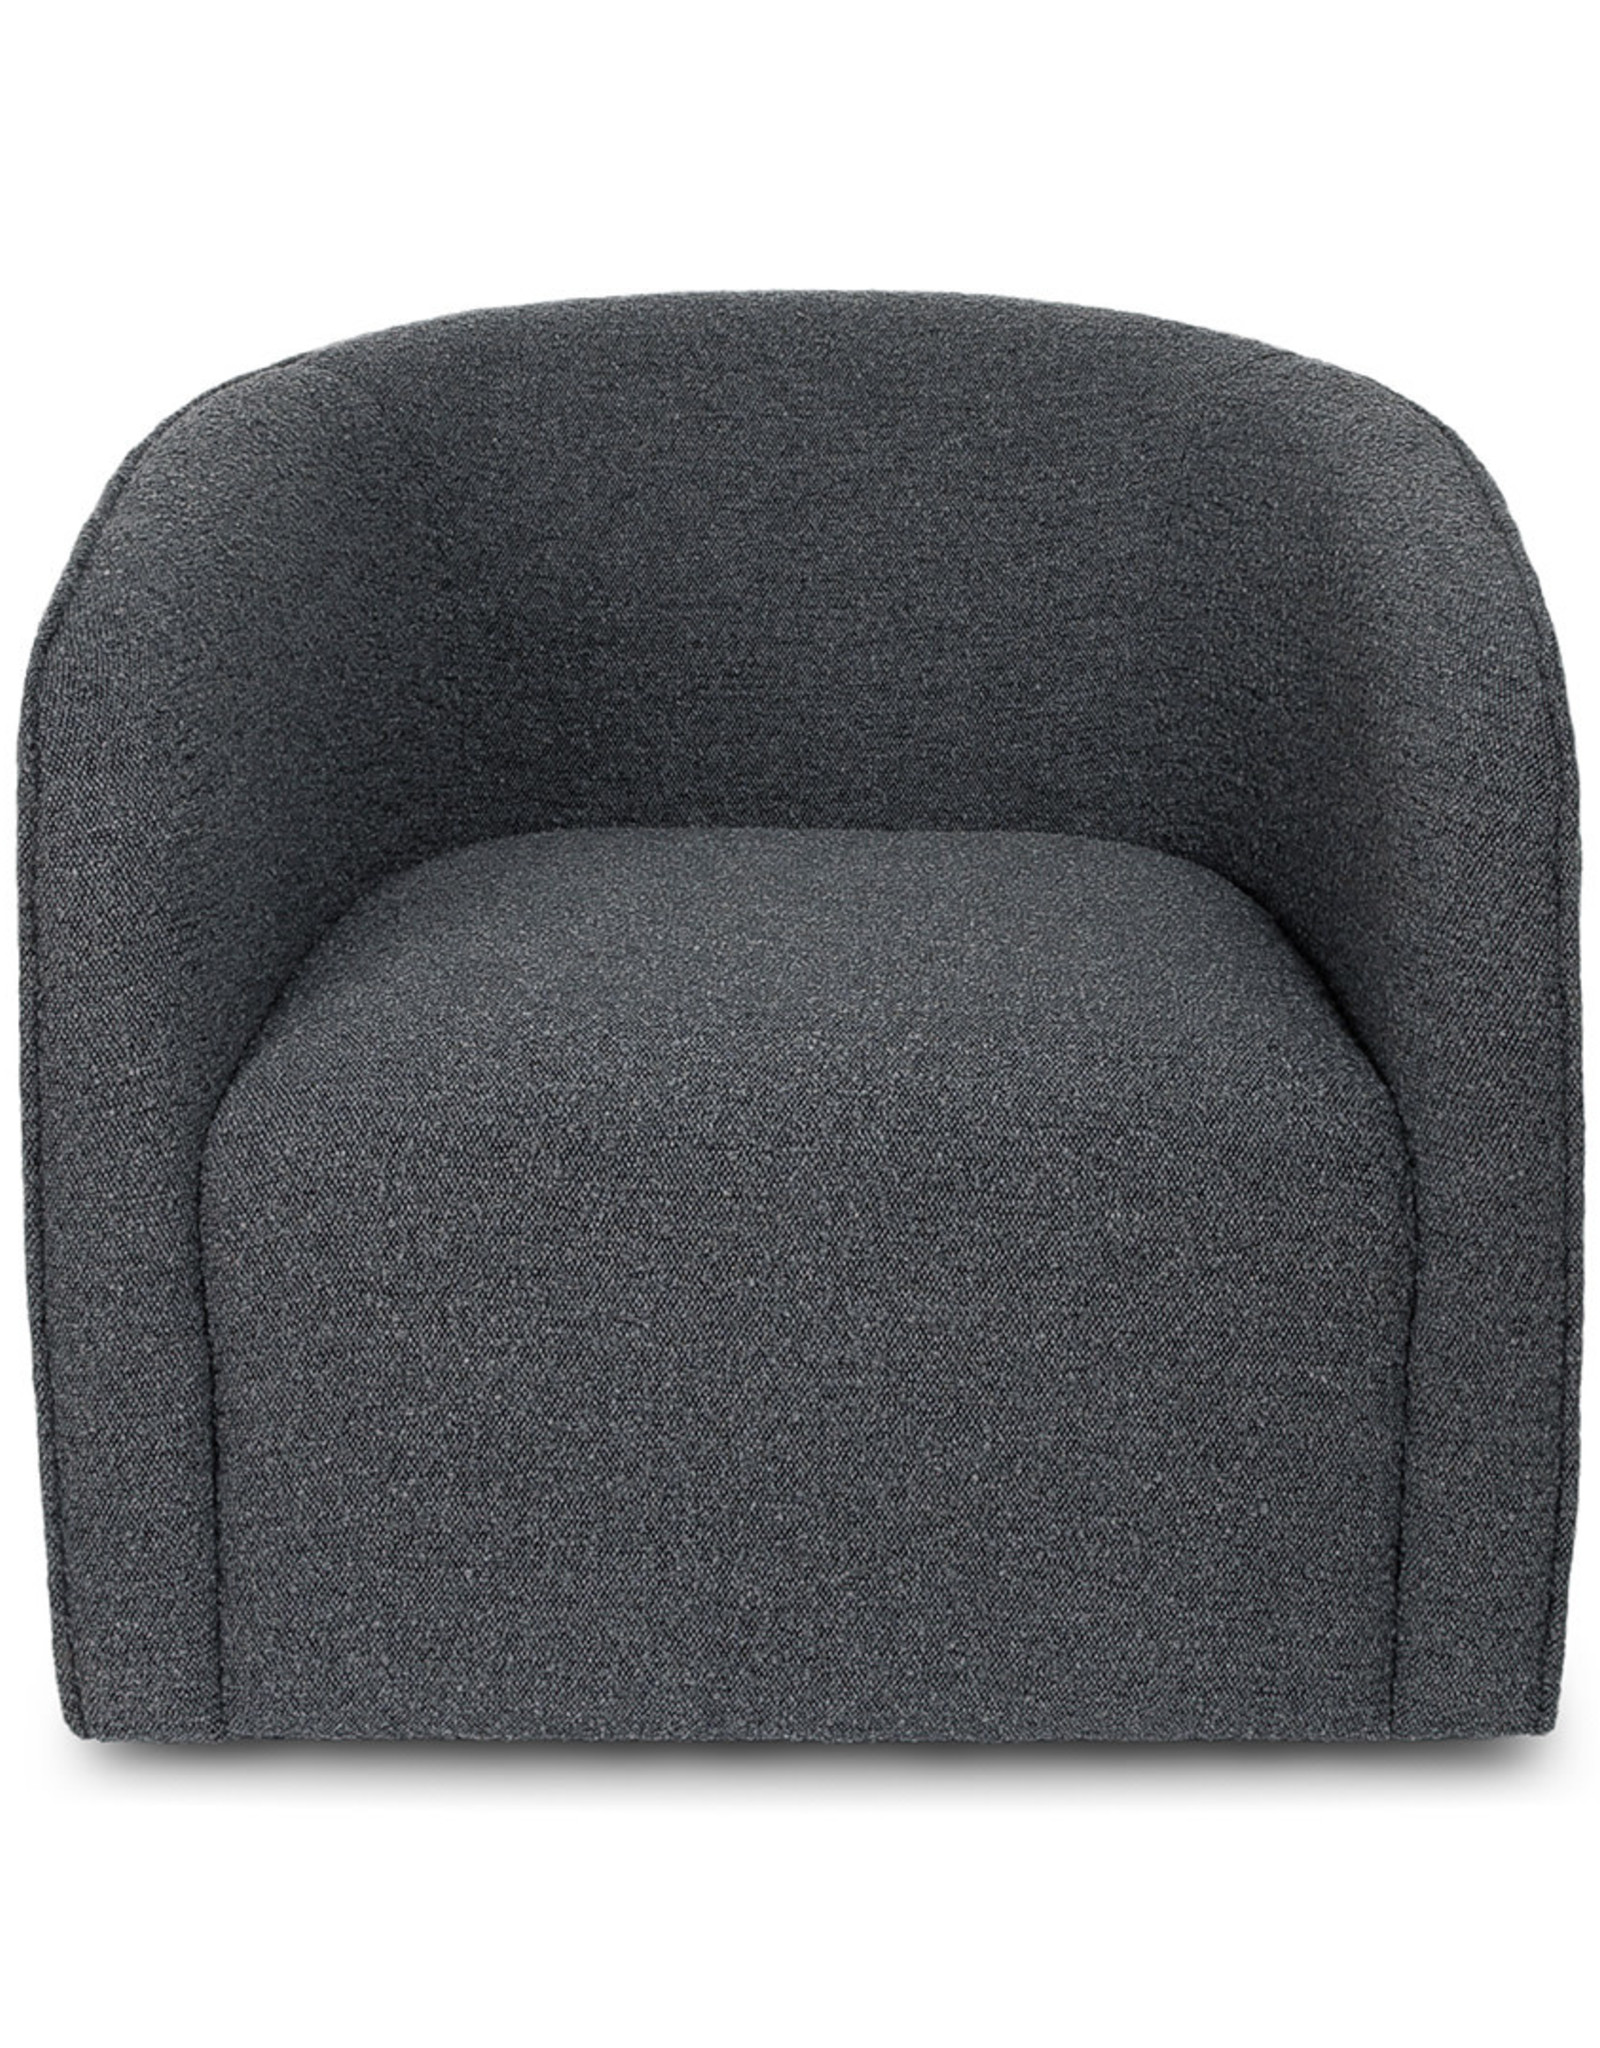 Evita Swivel Chair - Slate Boucle